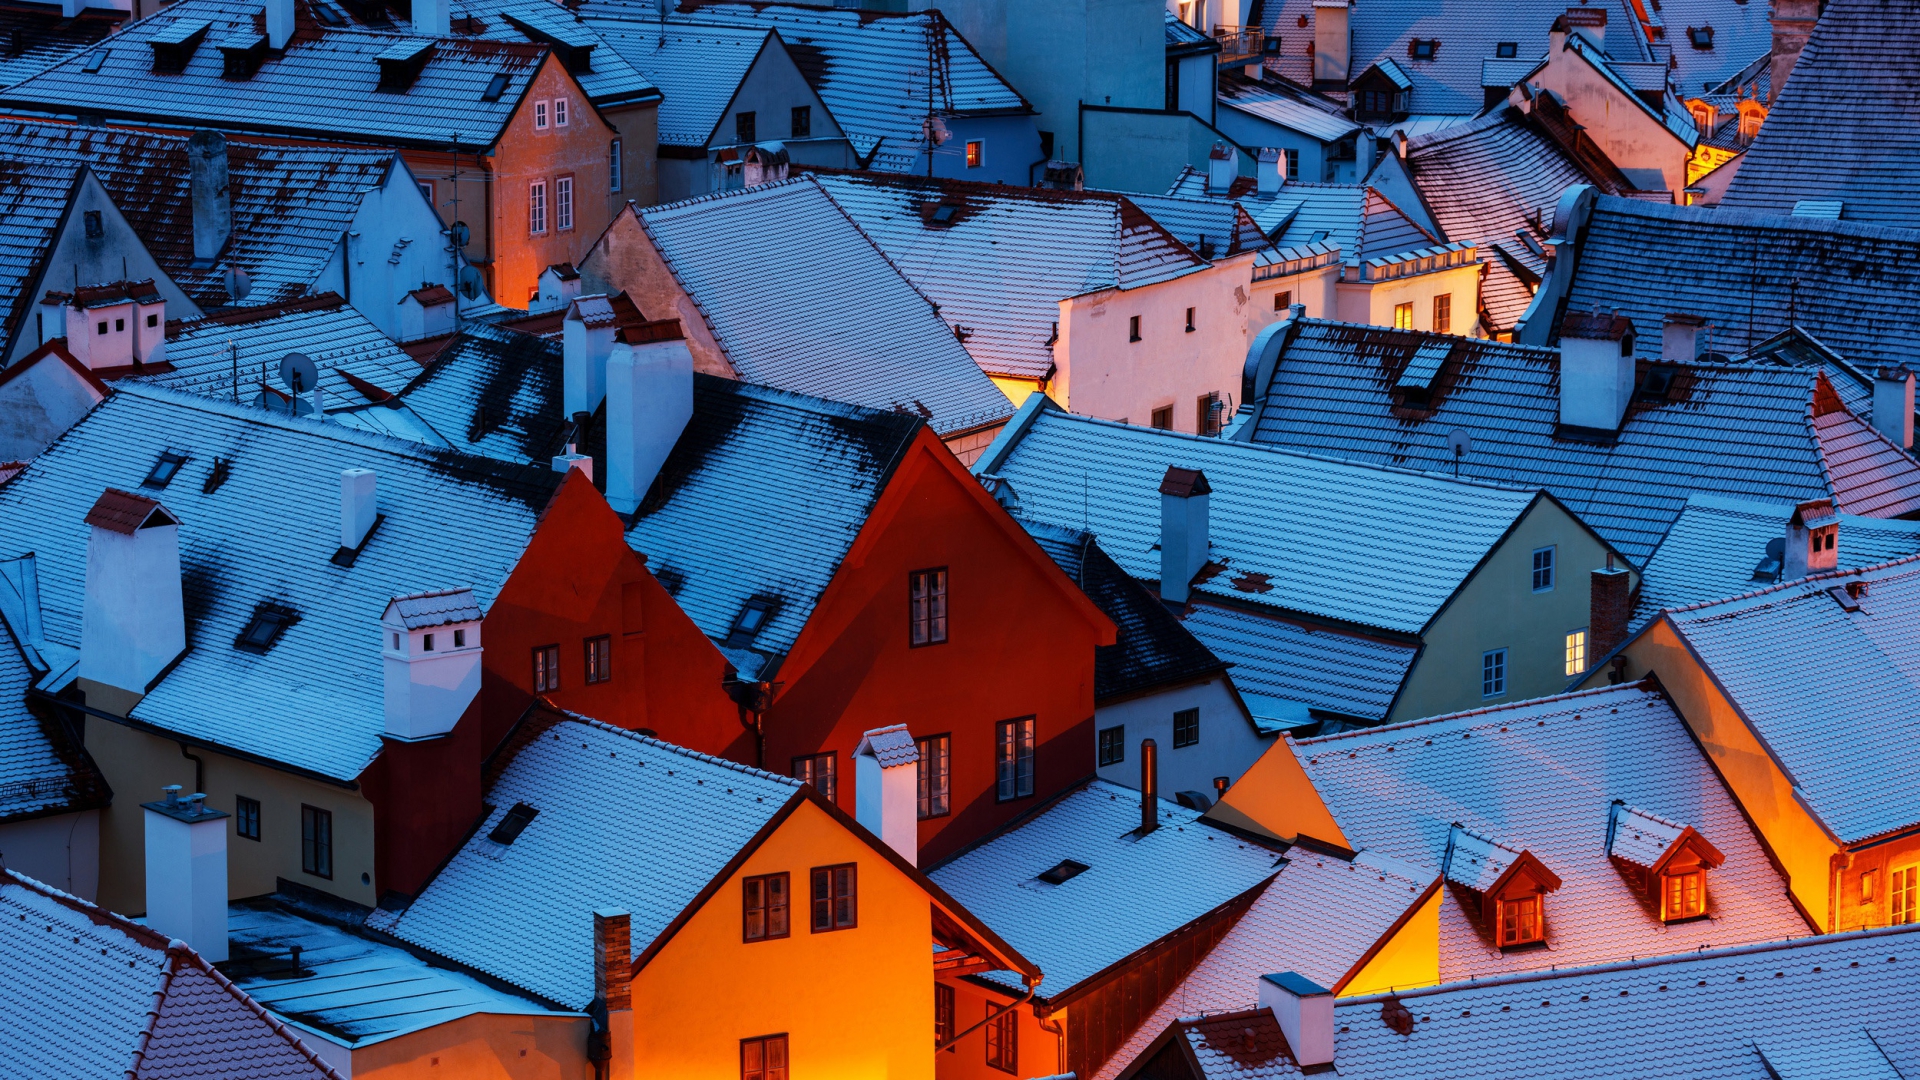 Martin Rak, Architecture, Building, Rooftops, Village, Snow, Winter, House, Evening, Lights, Czech Republic Wallpaper